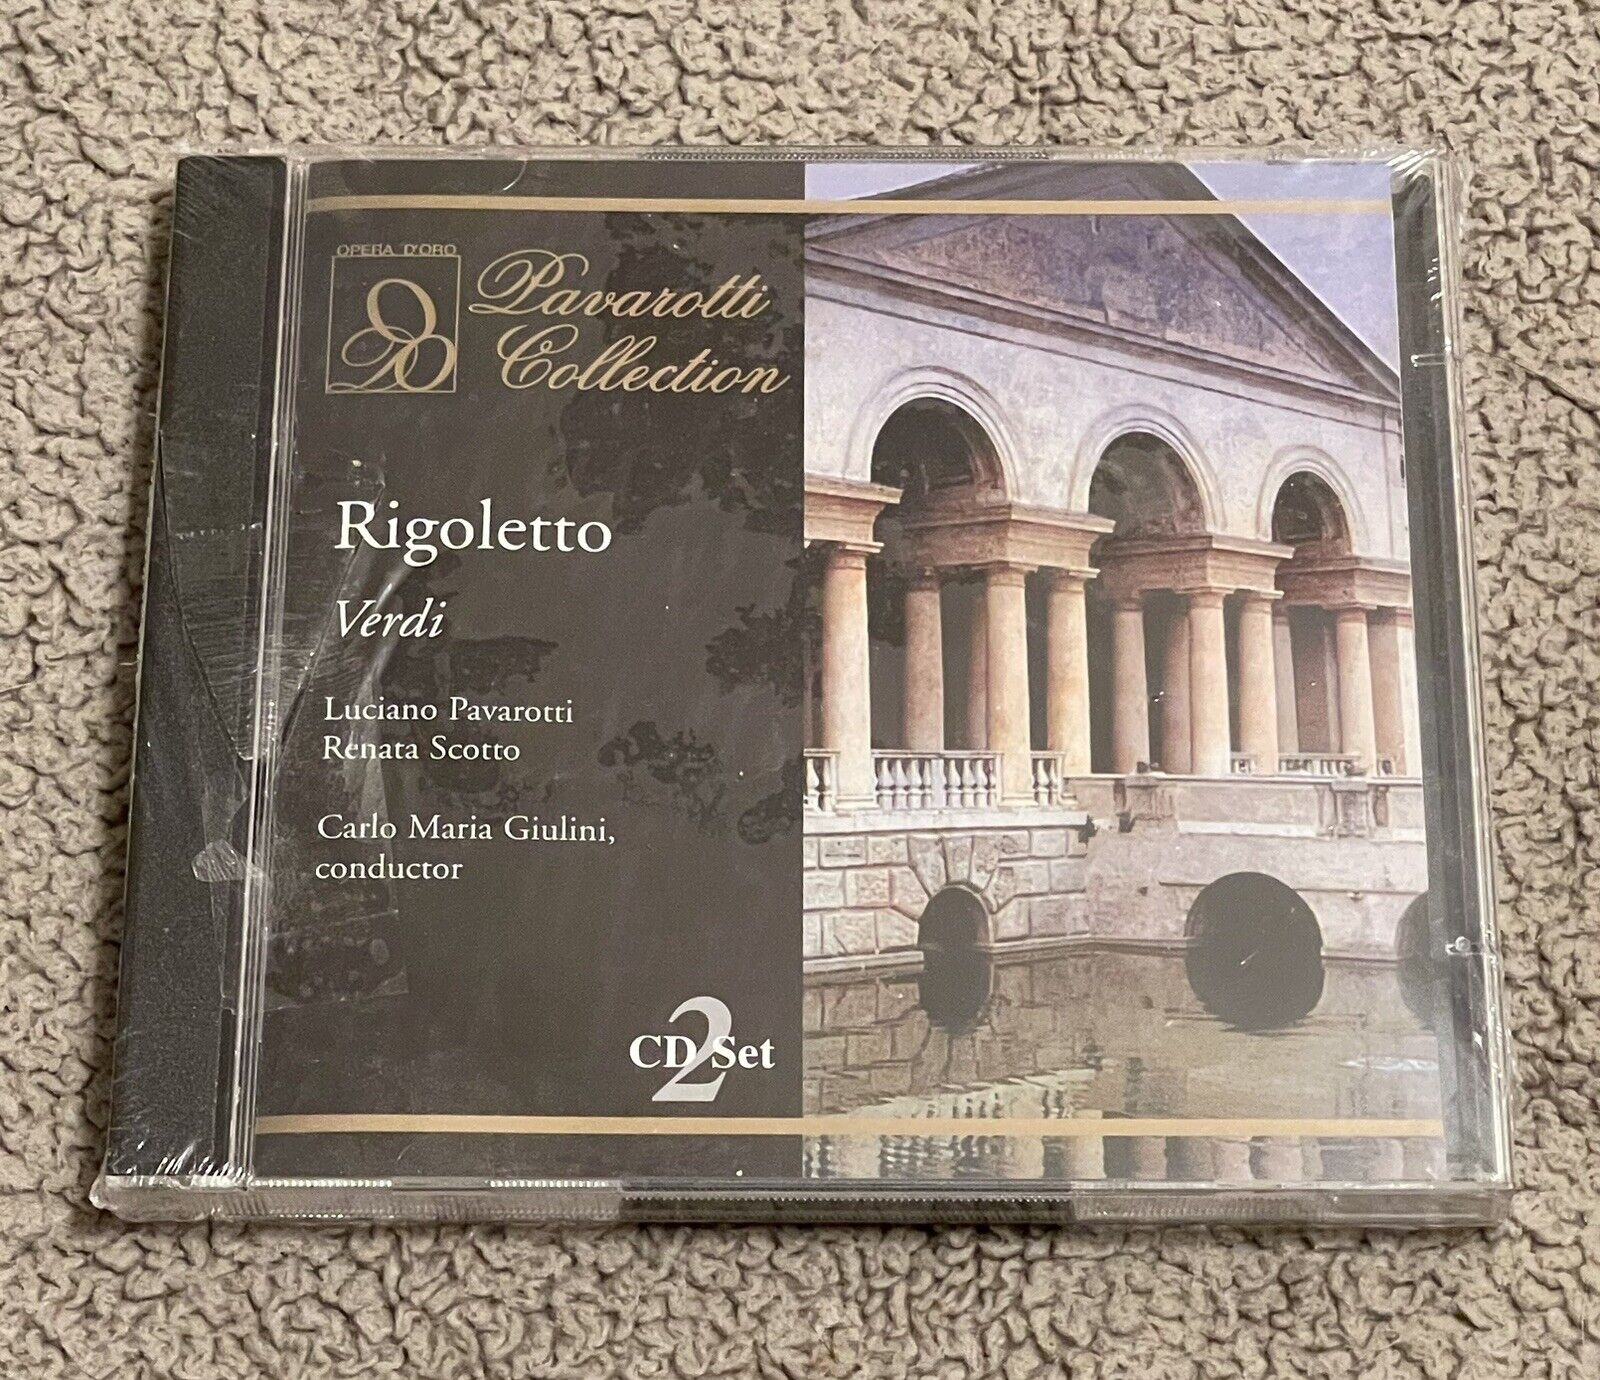 LUCIANO PAVAROTTI - Verdi: Rigoletto - 2 CD - Brand New Sealed